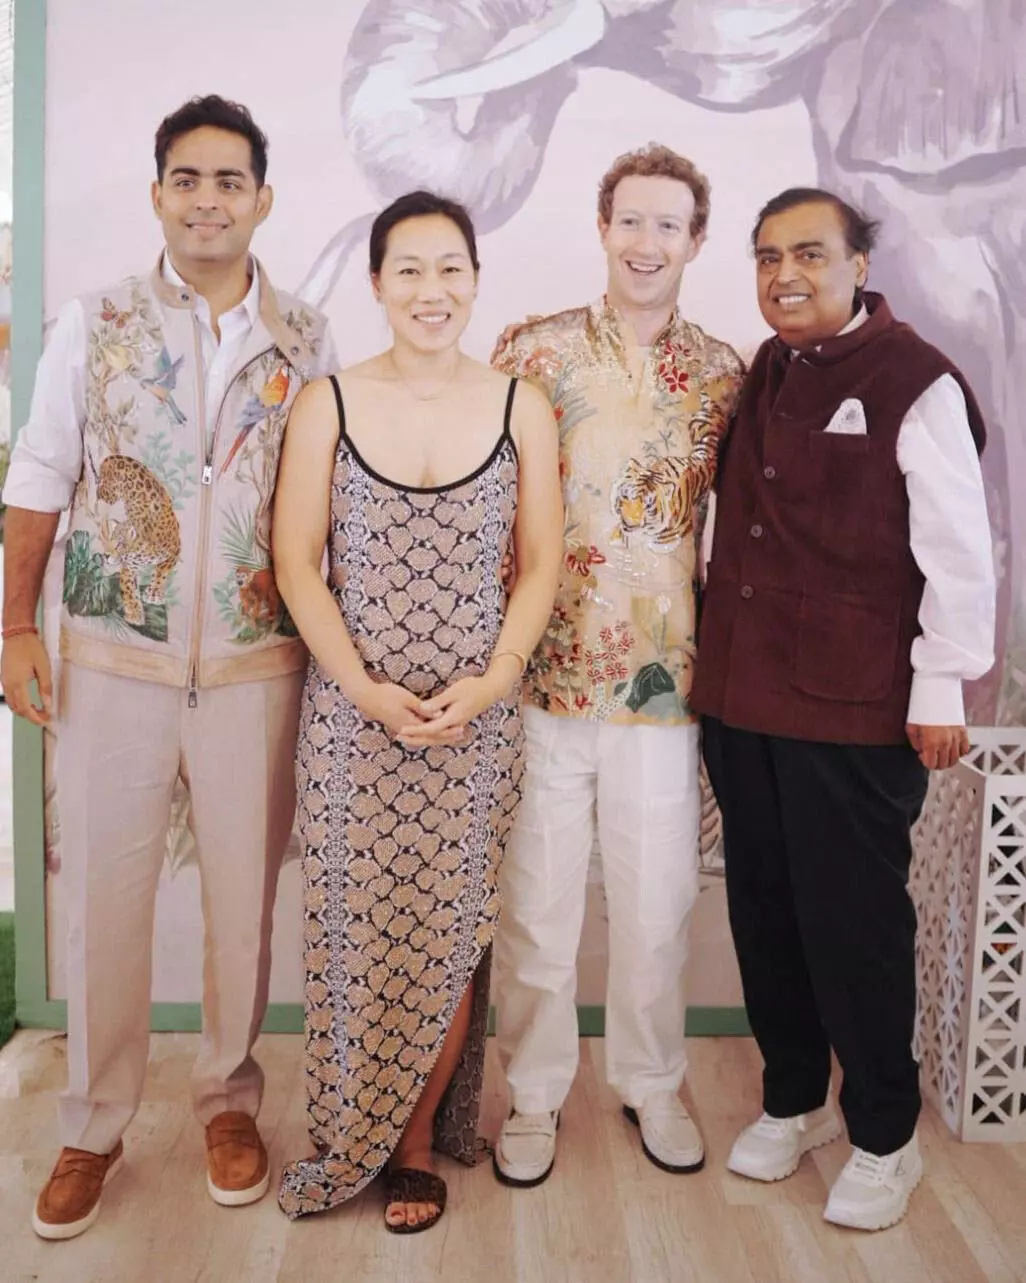 Anant-Radhika Wedding:भारत में विदेशी मेहमानों का स्वागत बड़े उत्साह से किया